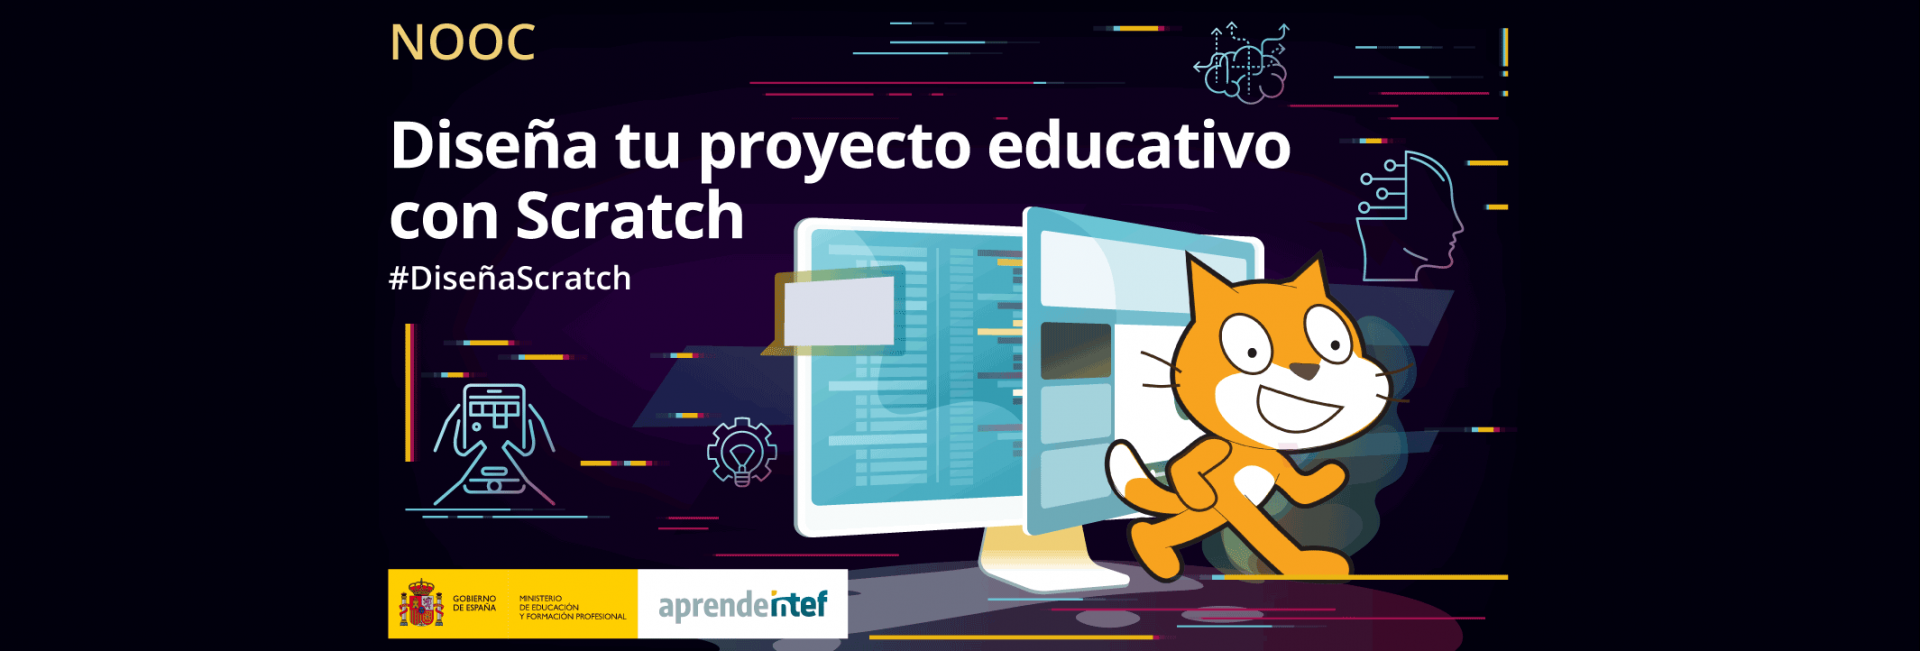 Diseña tu proyecto educativo con Scratch